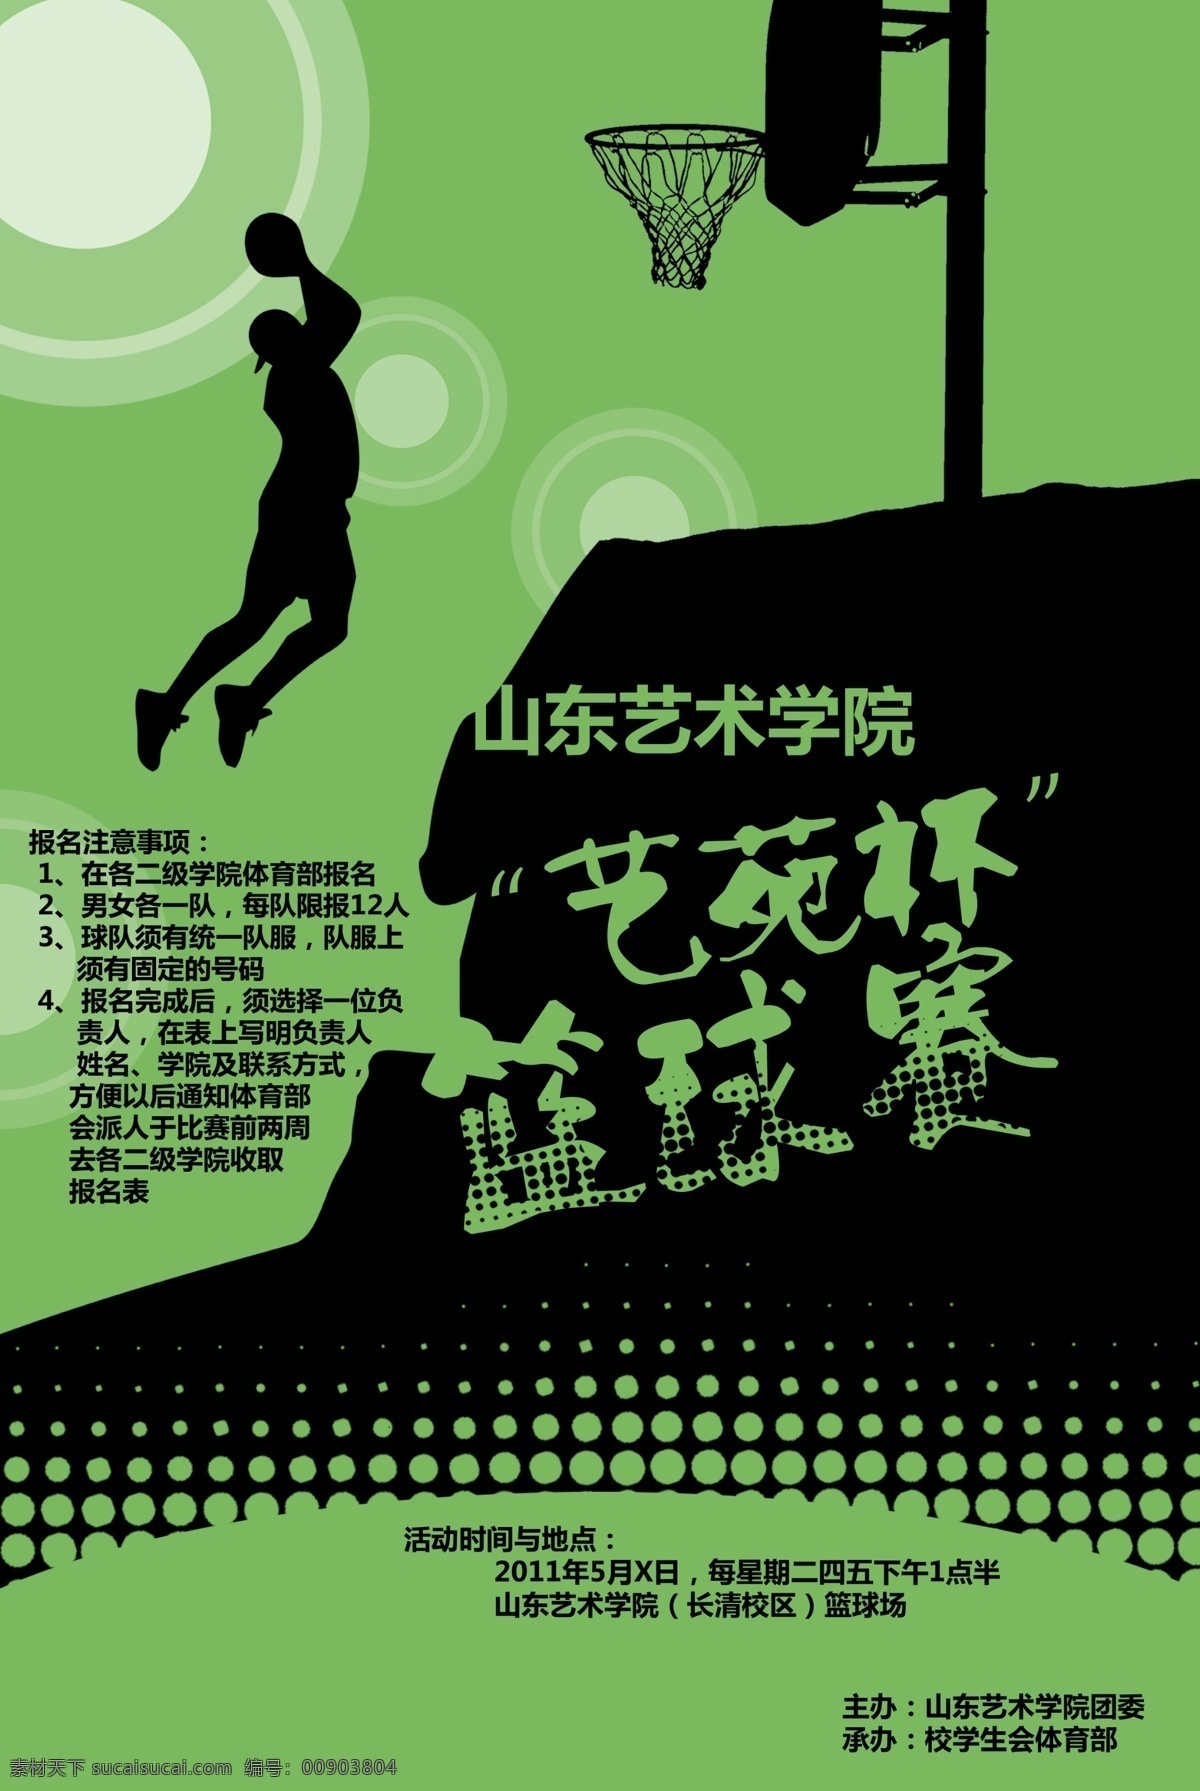 大学 广告设计模板 篮球赛 学生会 源文件 海报 模板下载 体育部 其他海报设计